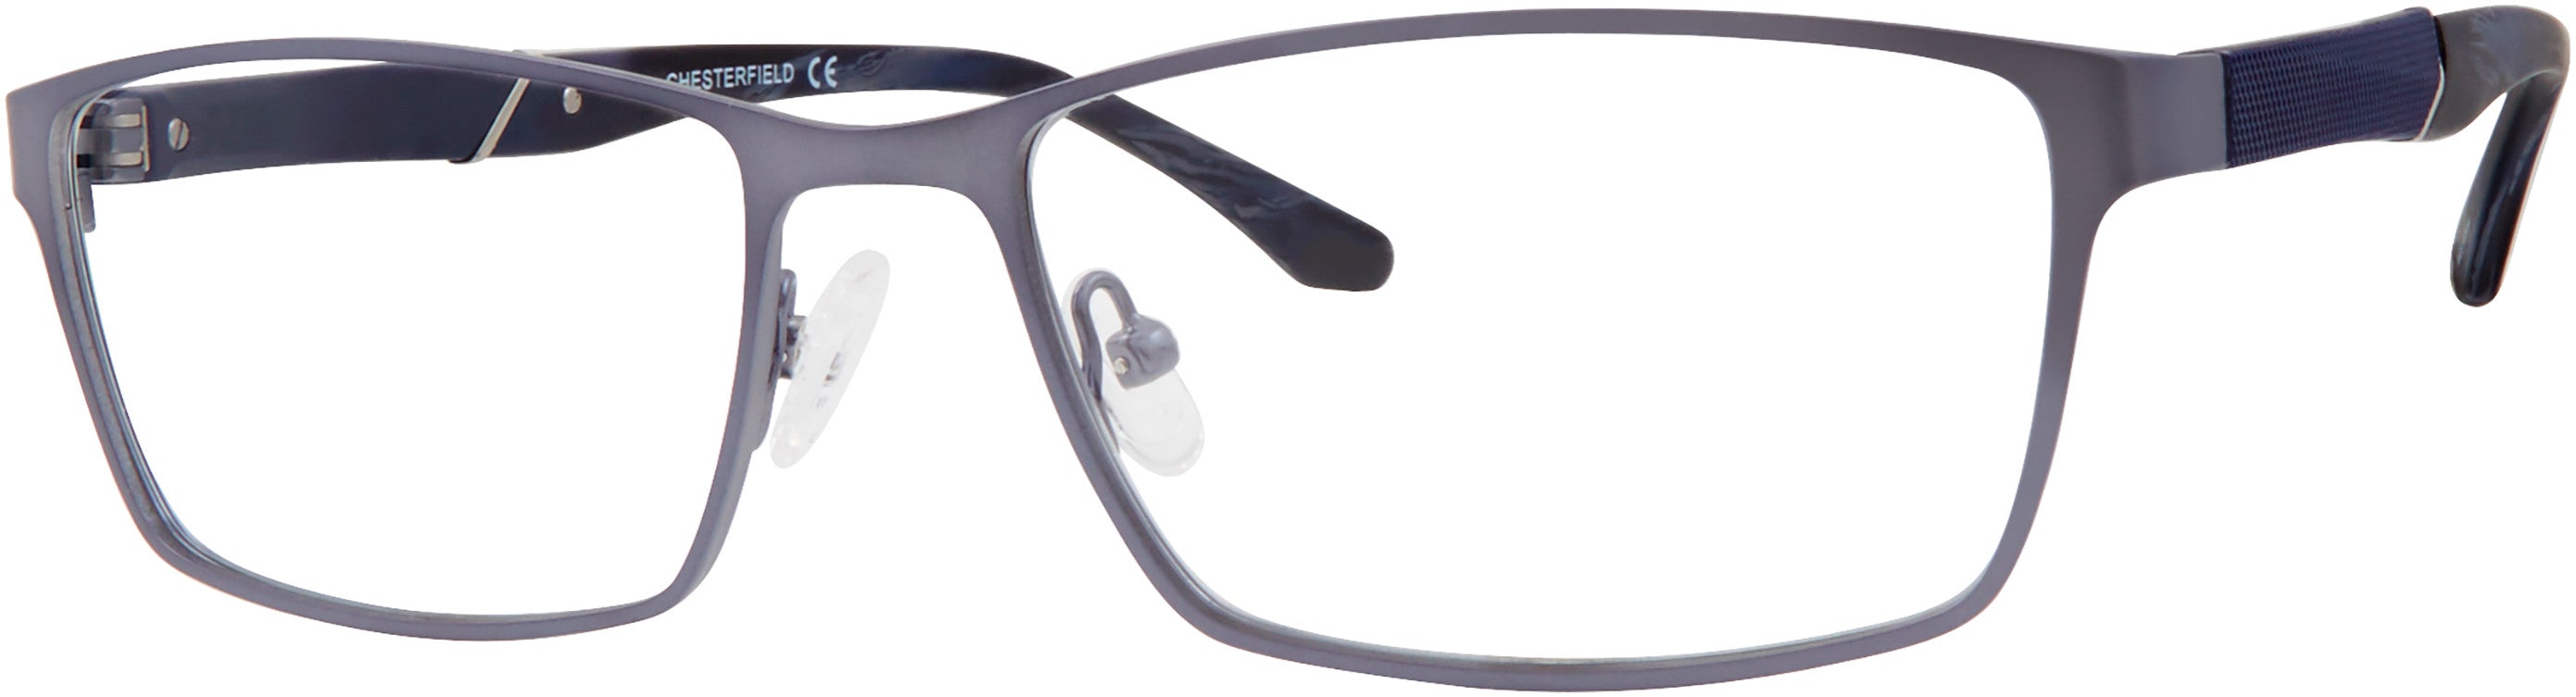  Chesterfield 67XL Rectangular Eyeglasses 0FRE-0FRE  Matte Gray (00 Demo Lens)